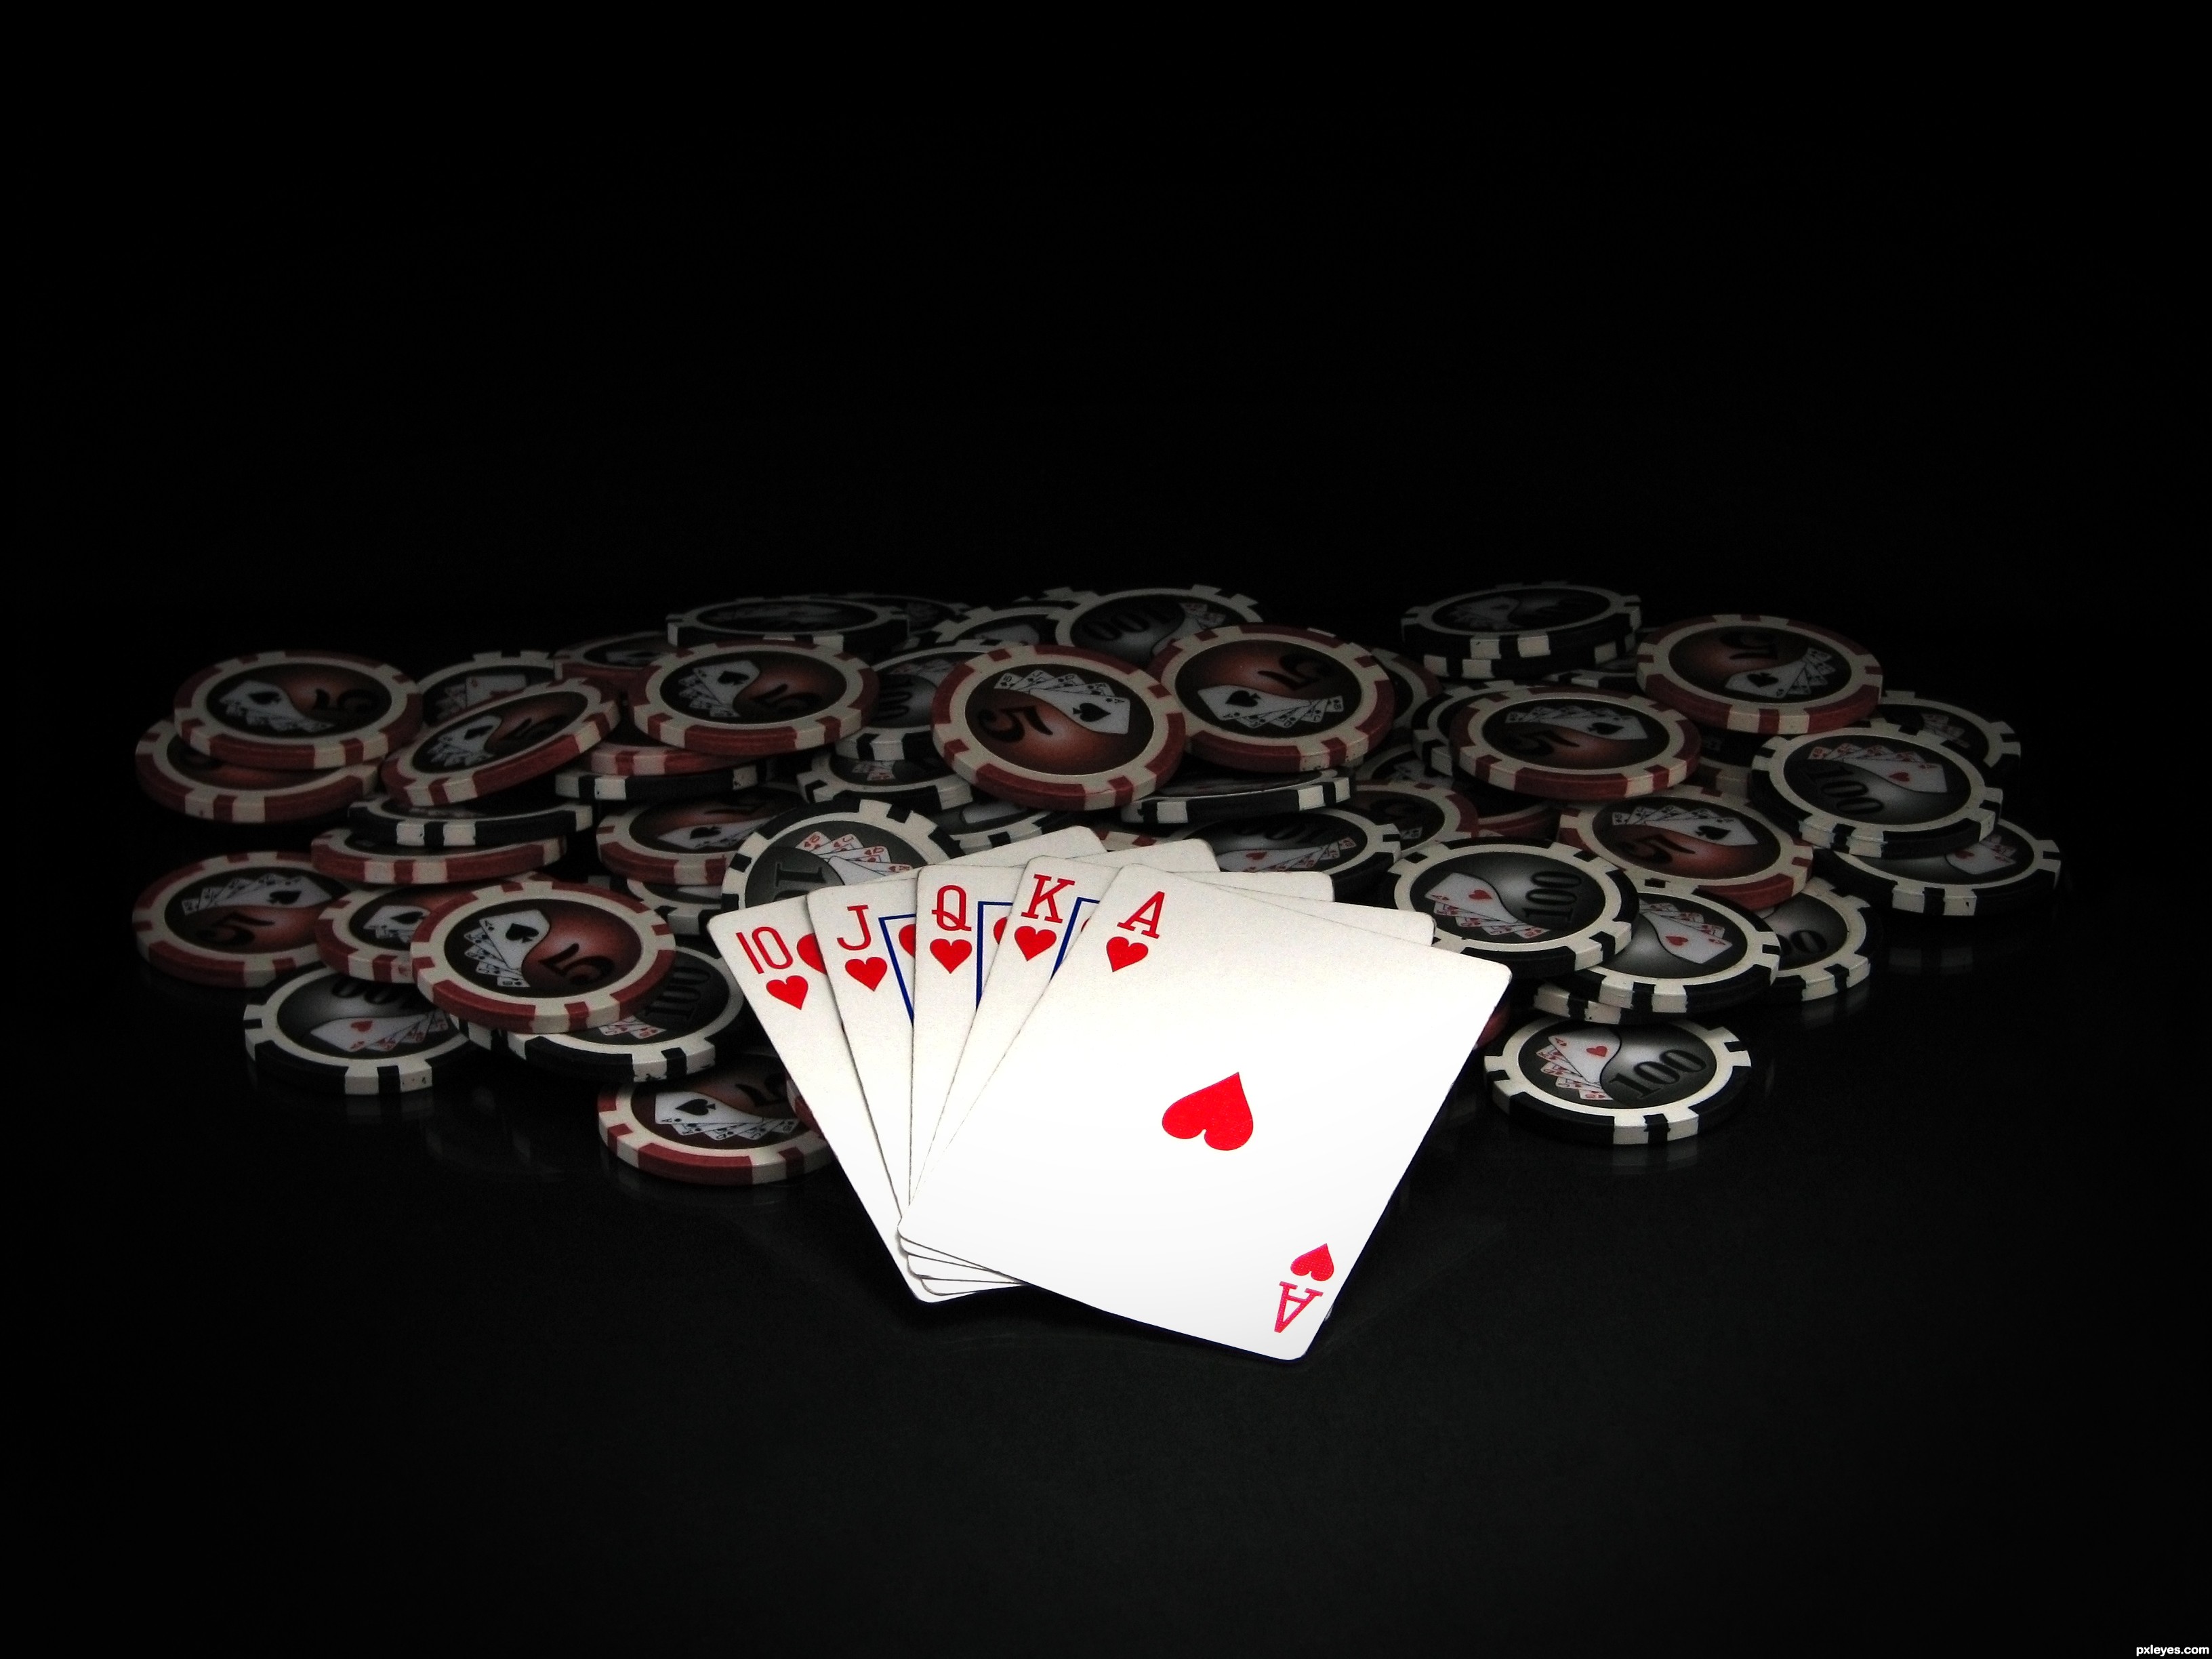 Картинки про карты. Покер. Покер обои. Покерный стол с картами. Покерные фишки на столе.